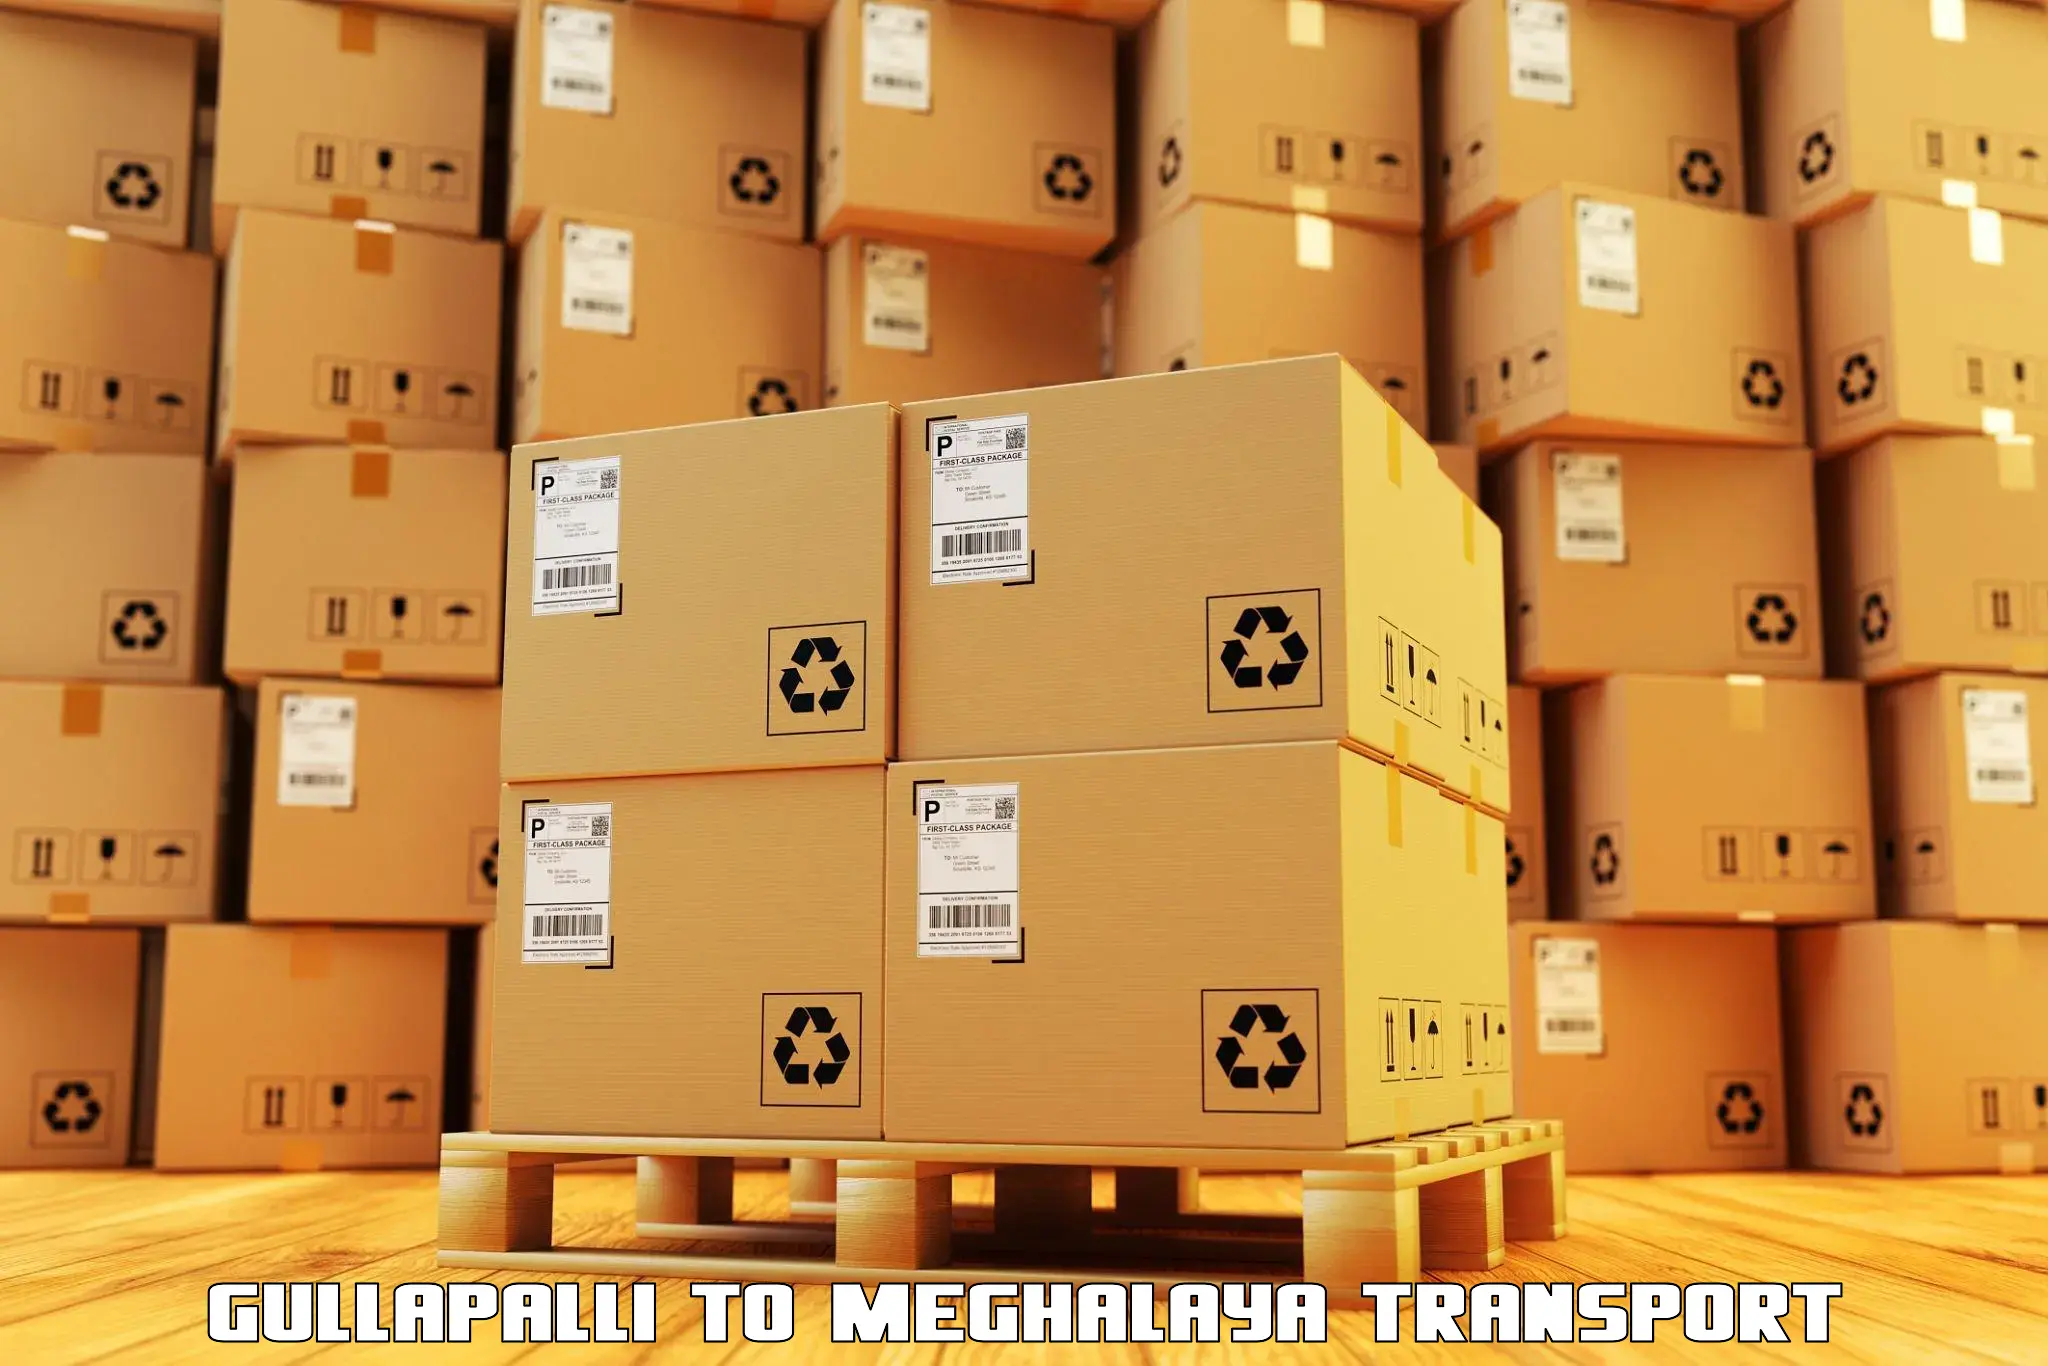 Pick up transport service Gullapalli to NIT Meghalaya